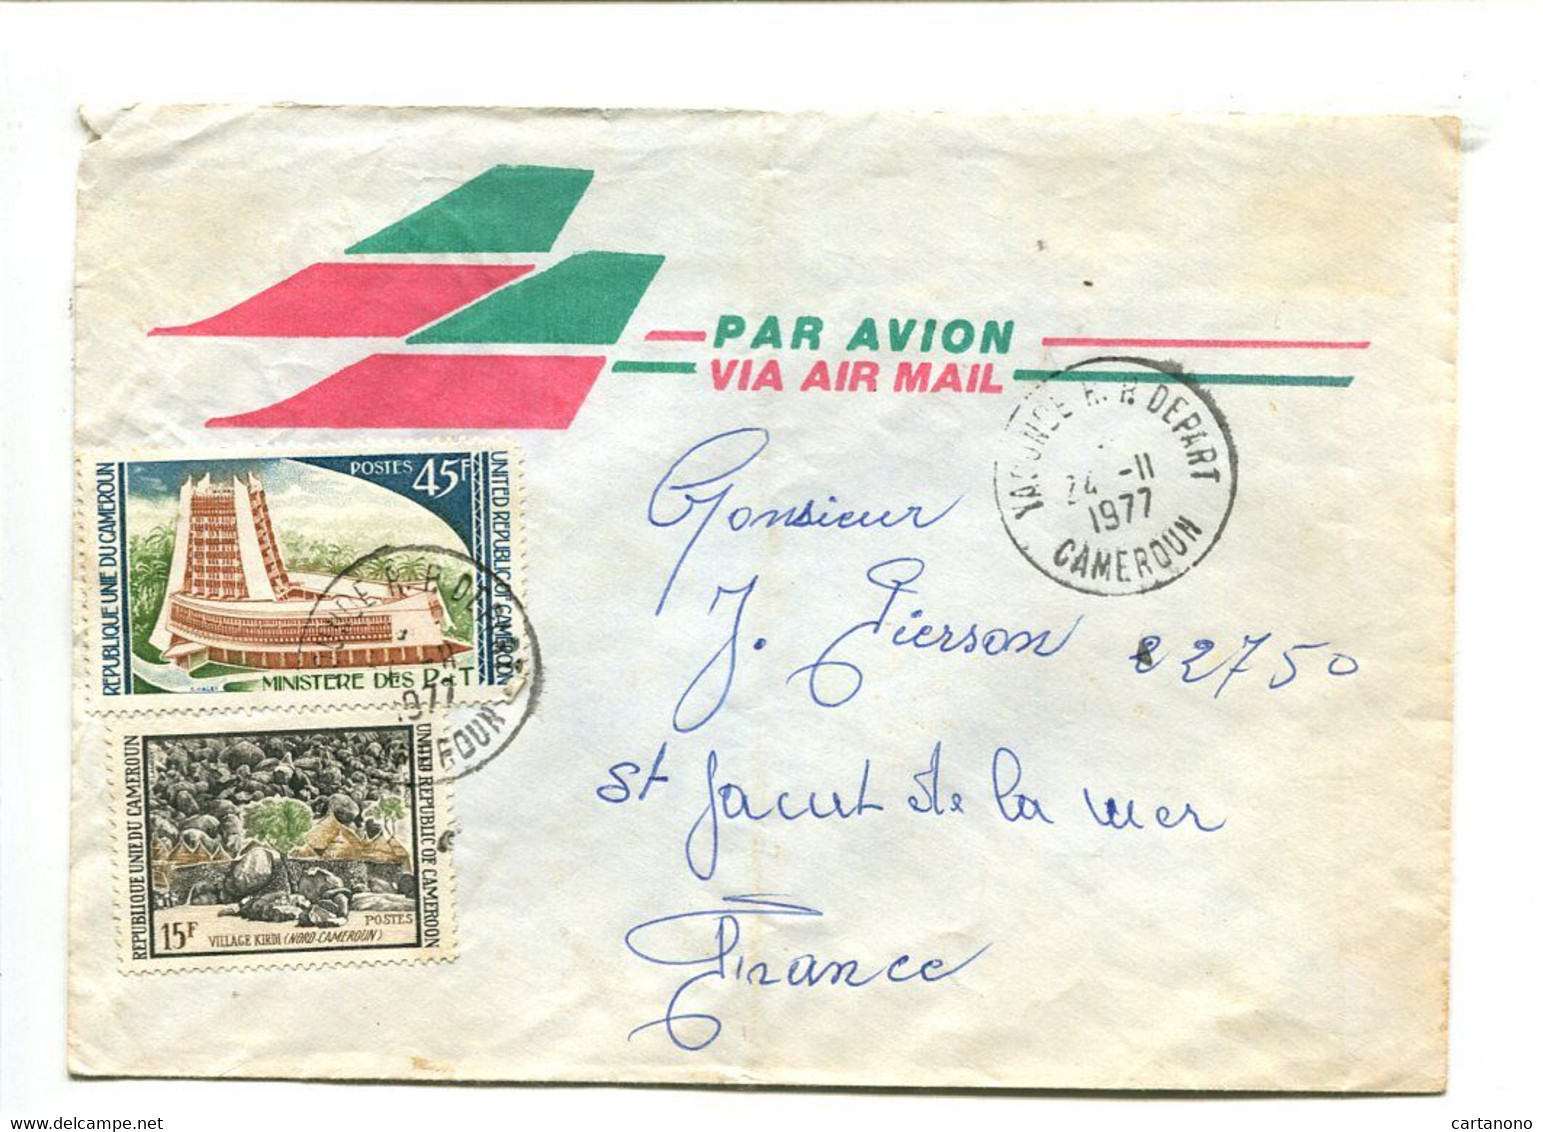 CAMEROUN Yaoude R.P. Départ 1977 - Affranchissement Sur Lettre Par Avion - Camerún (1960-...)